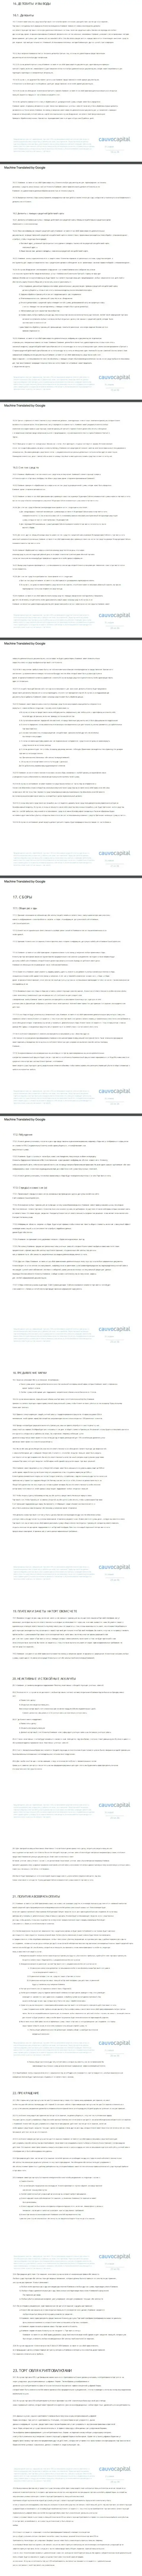 3 часть пользовательского соглашения форекс-брокерской компании Cauvo Capital